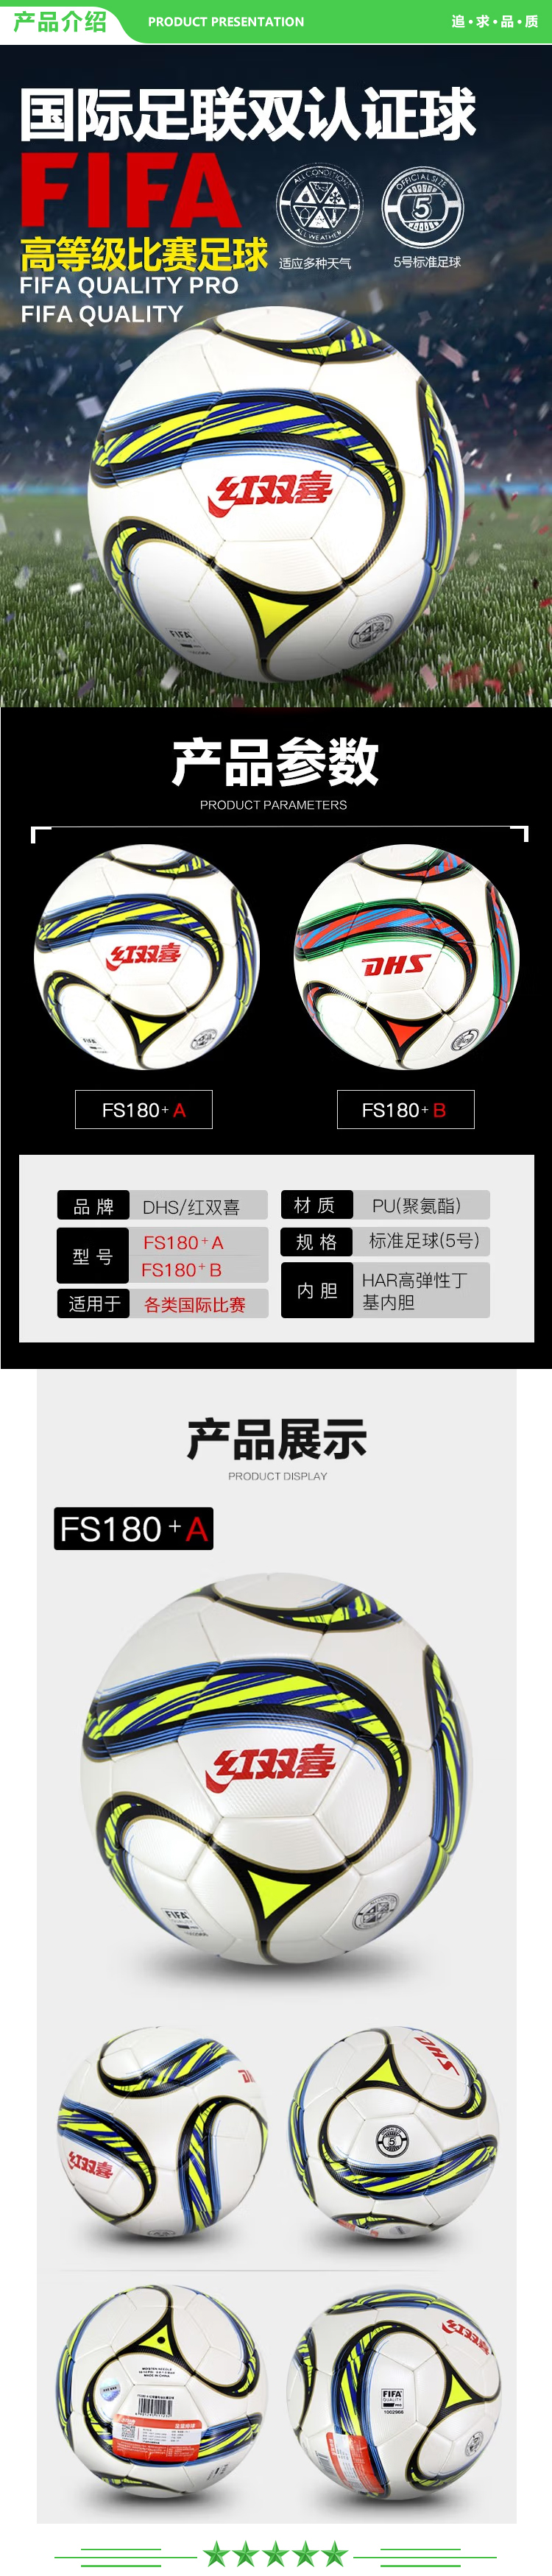 红双喜 DHS FS180+A 足球 国际专业比赛标准五号球 FIFA双认证PU球  (2).jpg